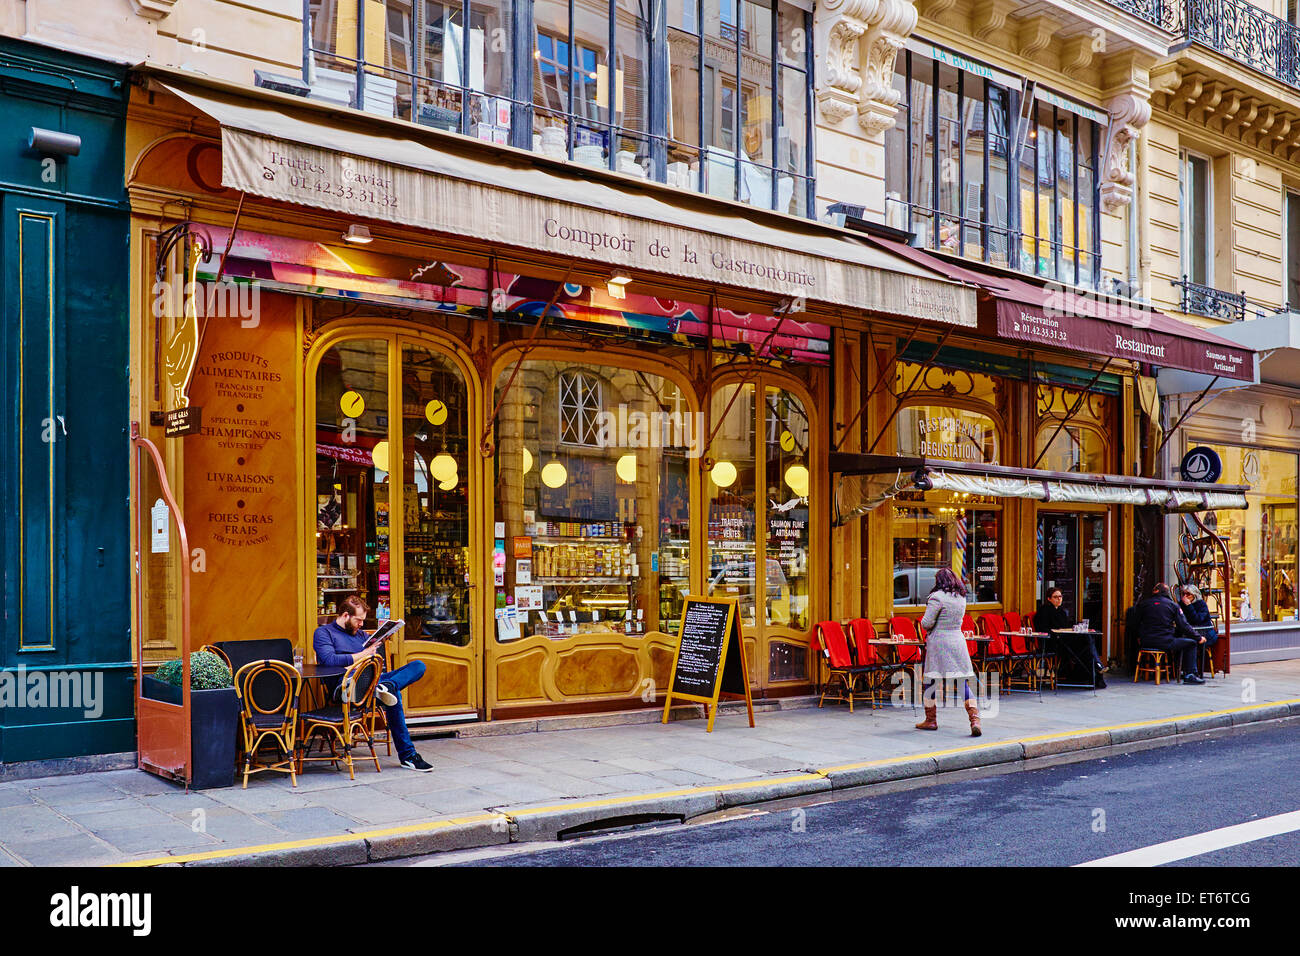 France, Paris (75), Comptoir de La Gastronomie, 34 rue Montmartre Stock Photo